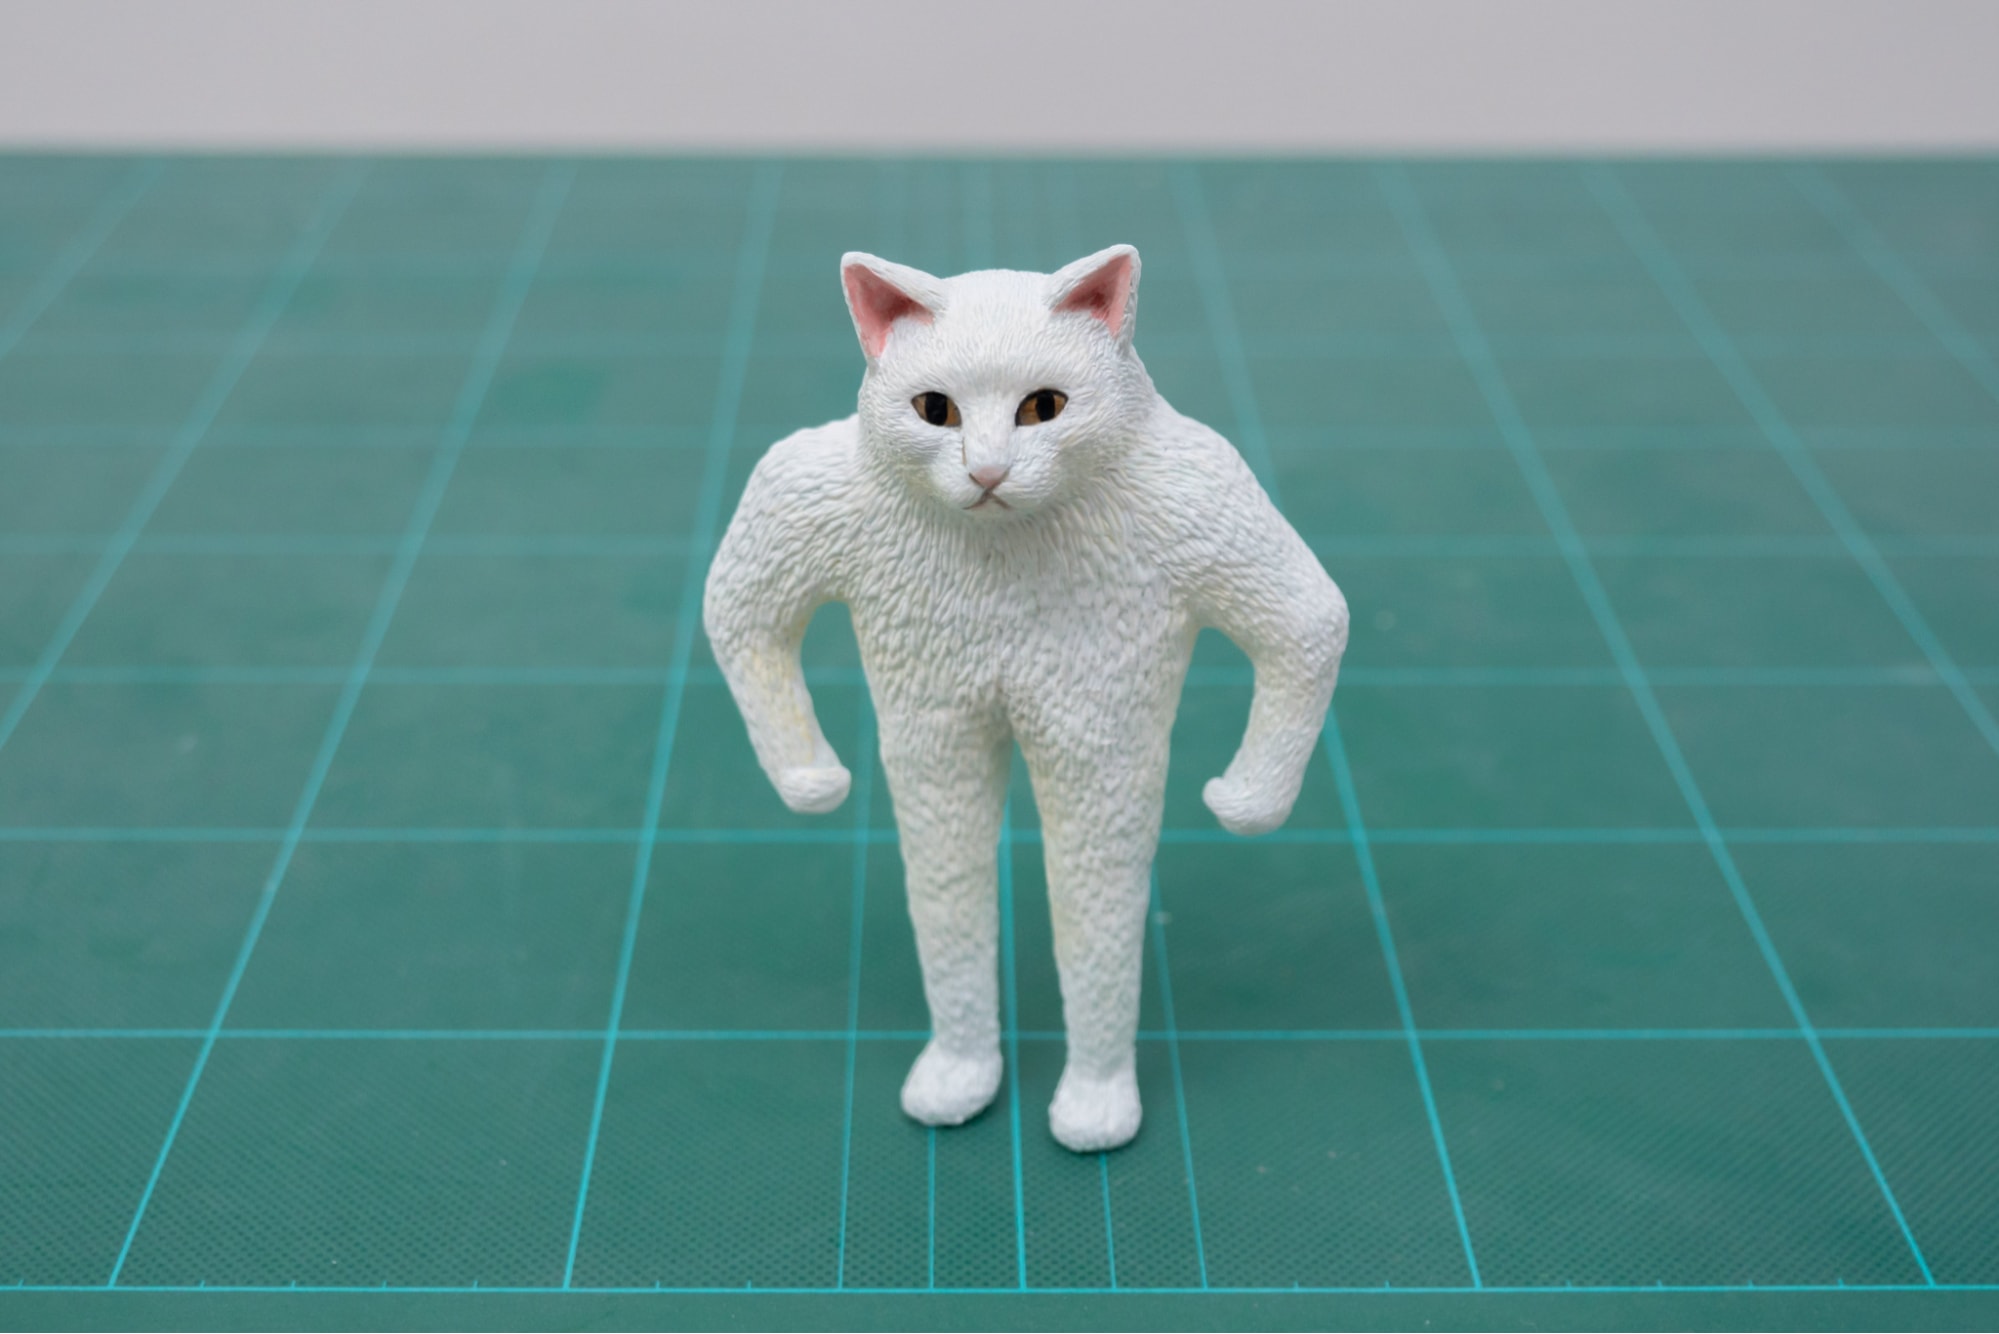 Meetissai meme sculptures - buff half-cat sculpture